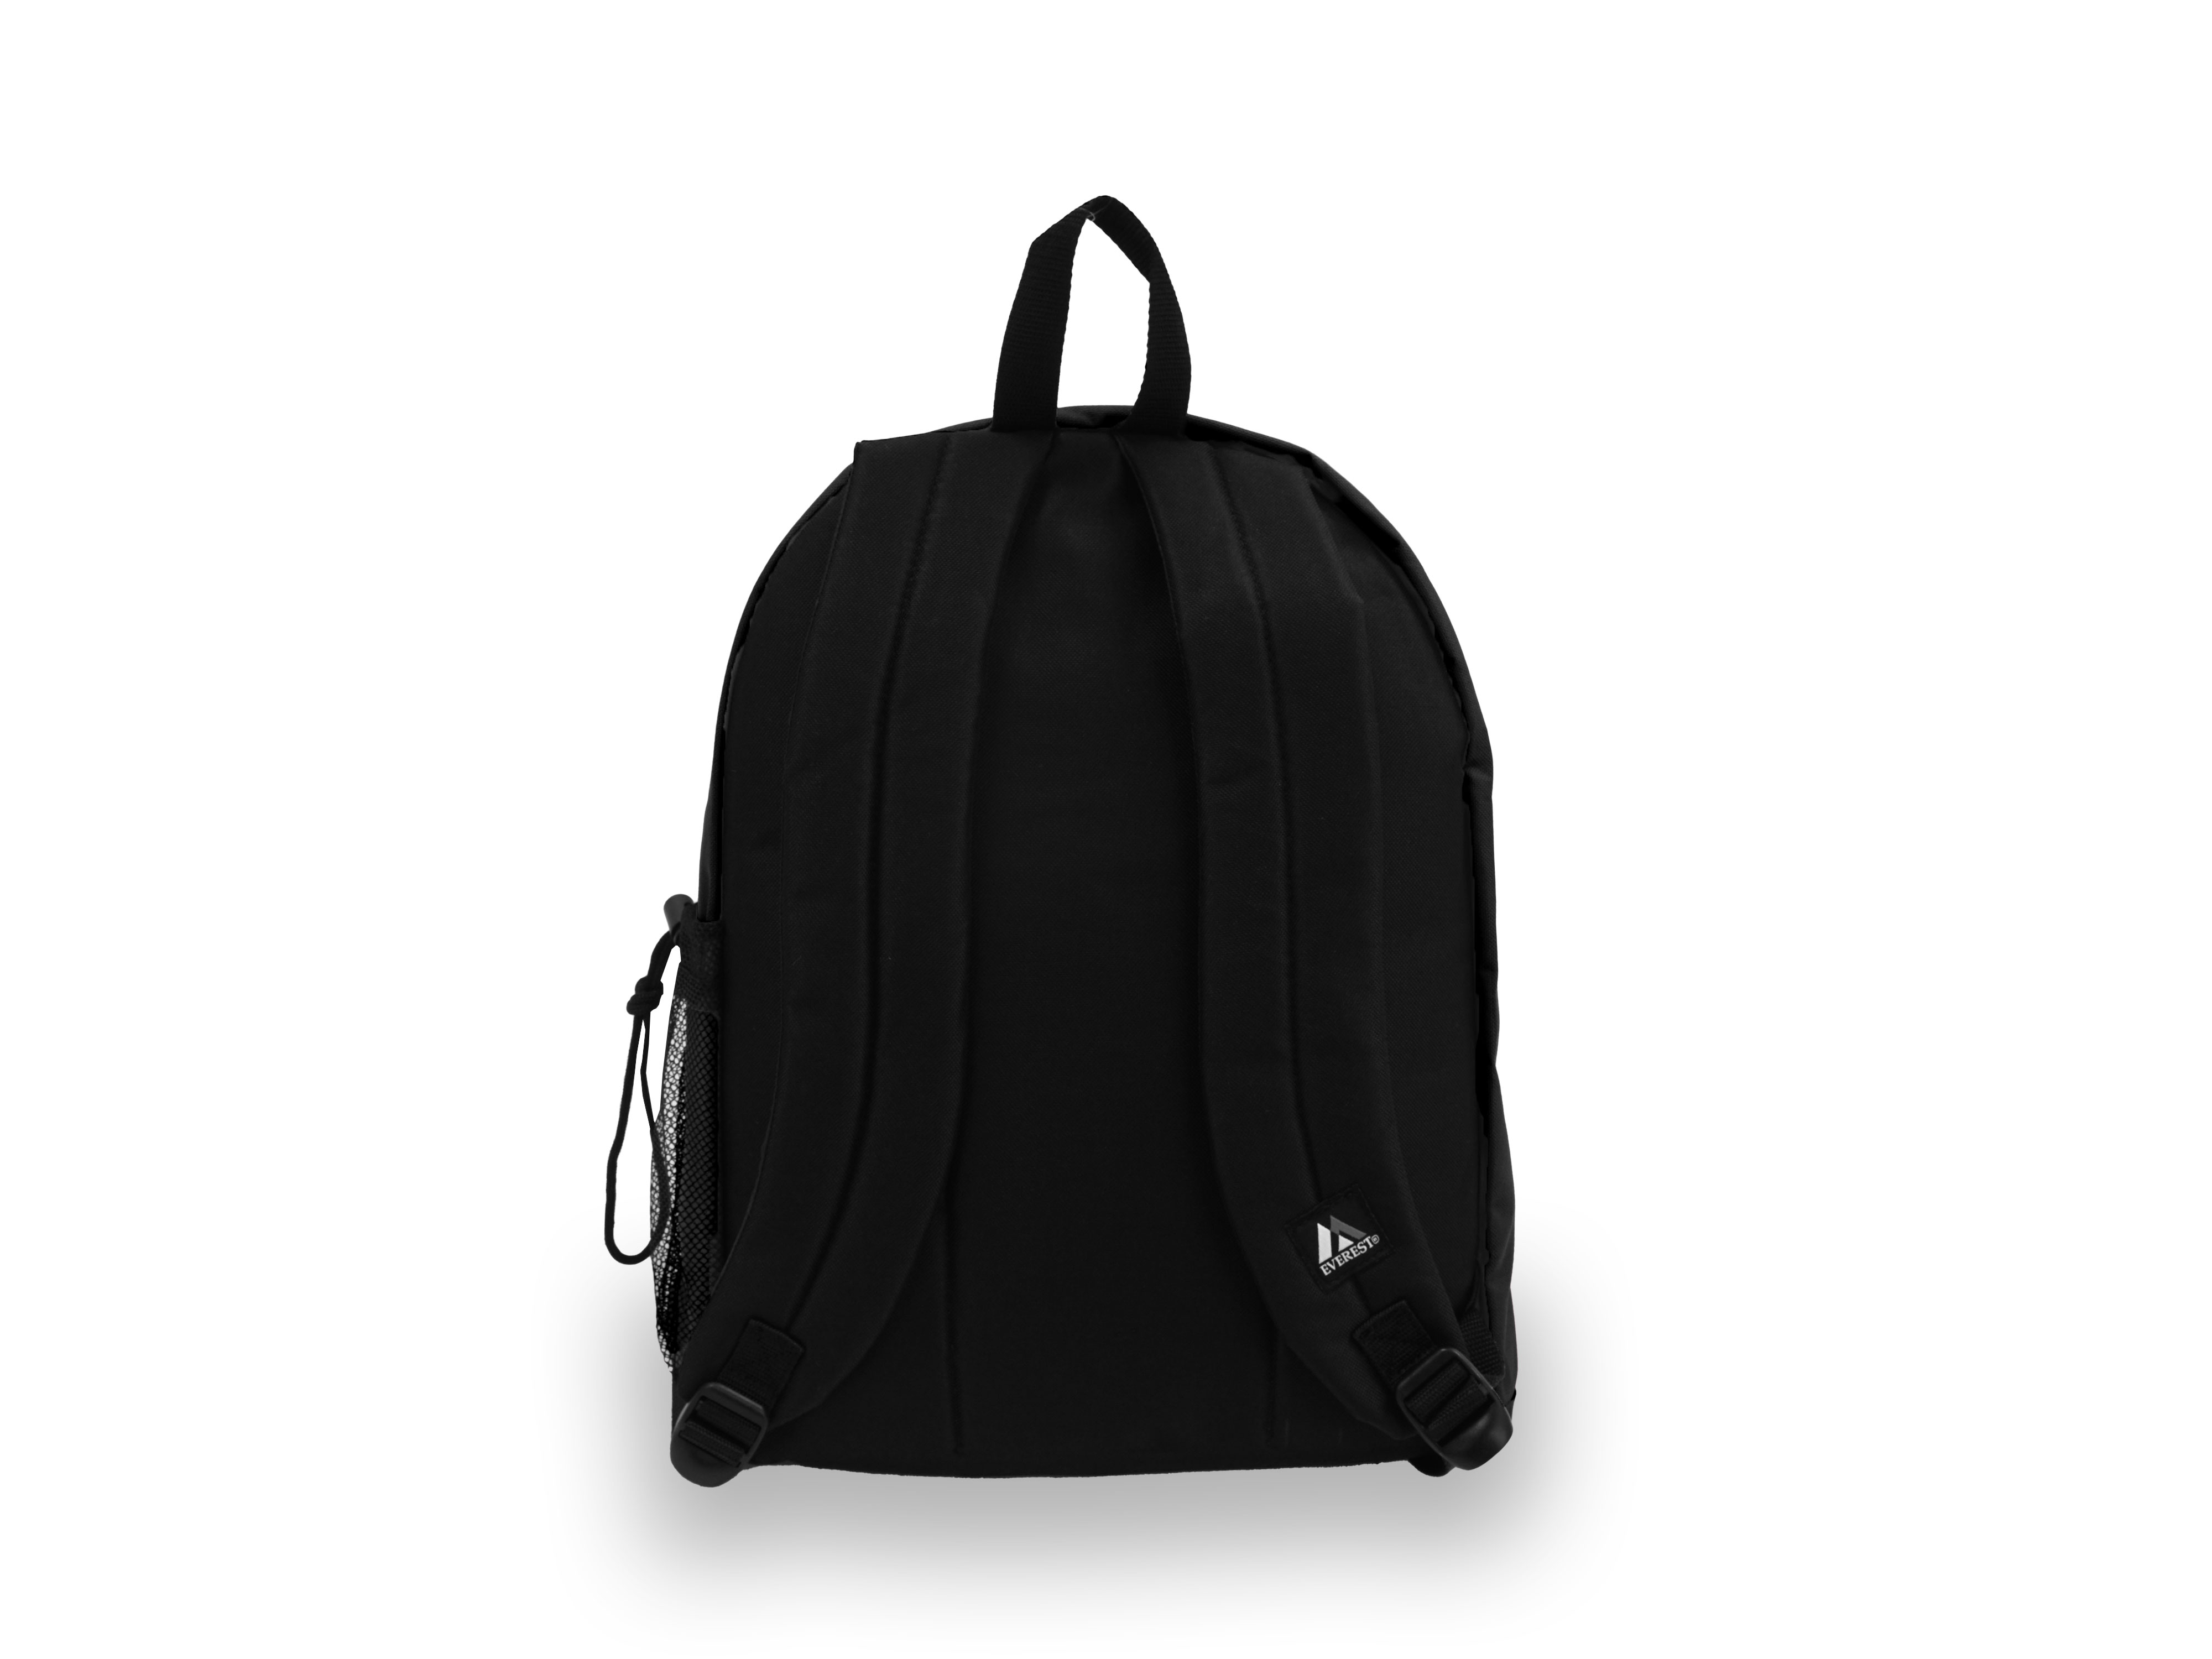 Everest Unisex Standard Backpack, Black - image 3 of 4